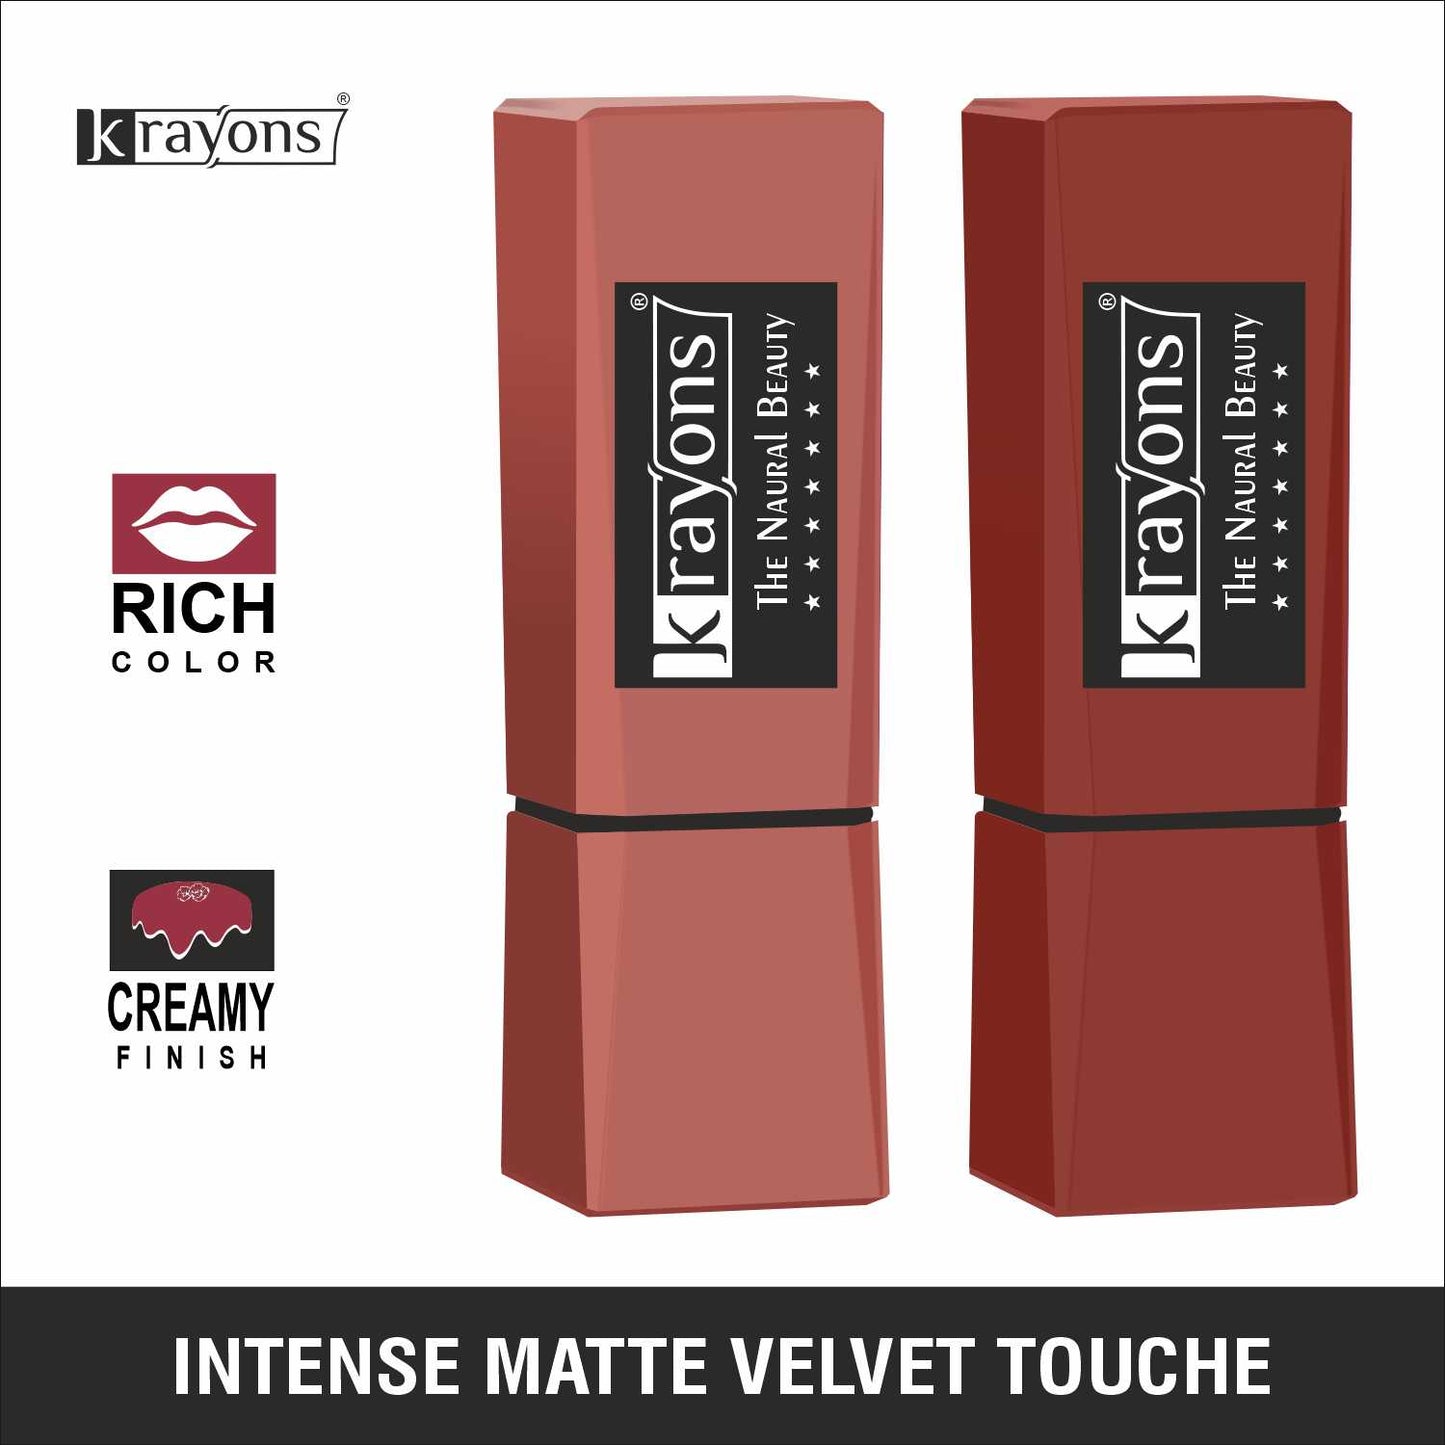 Krayons Intense Matte Lipstick, Waterproof, Longlasting, Nude Beige, Chocolate Caramel, 3.5gm Each (Pack of 2)